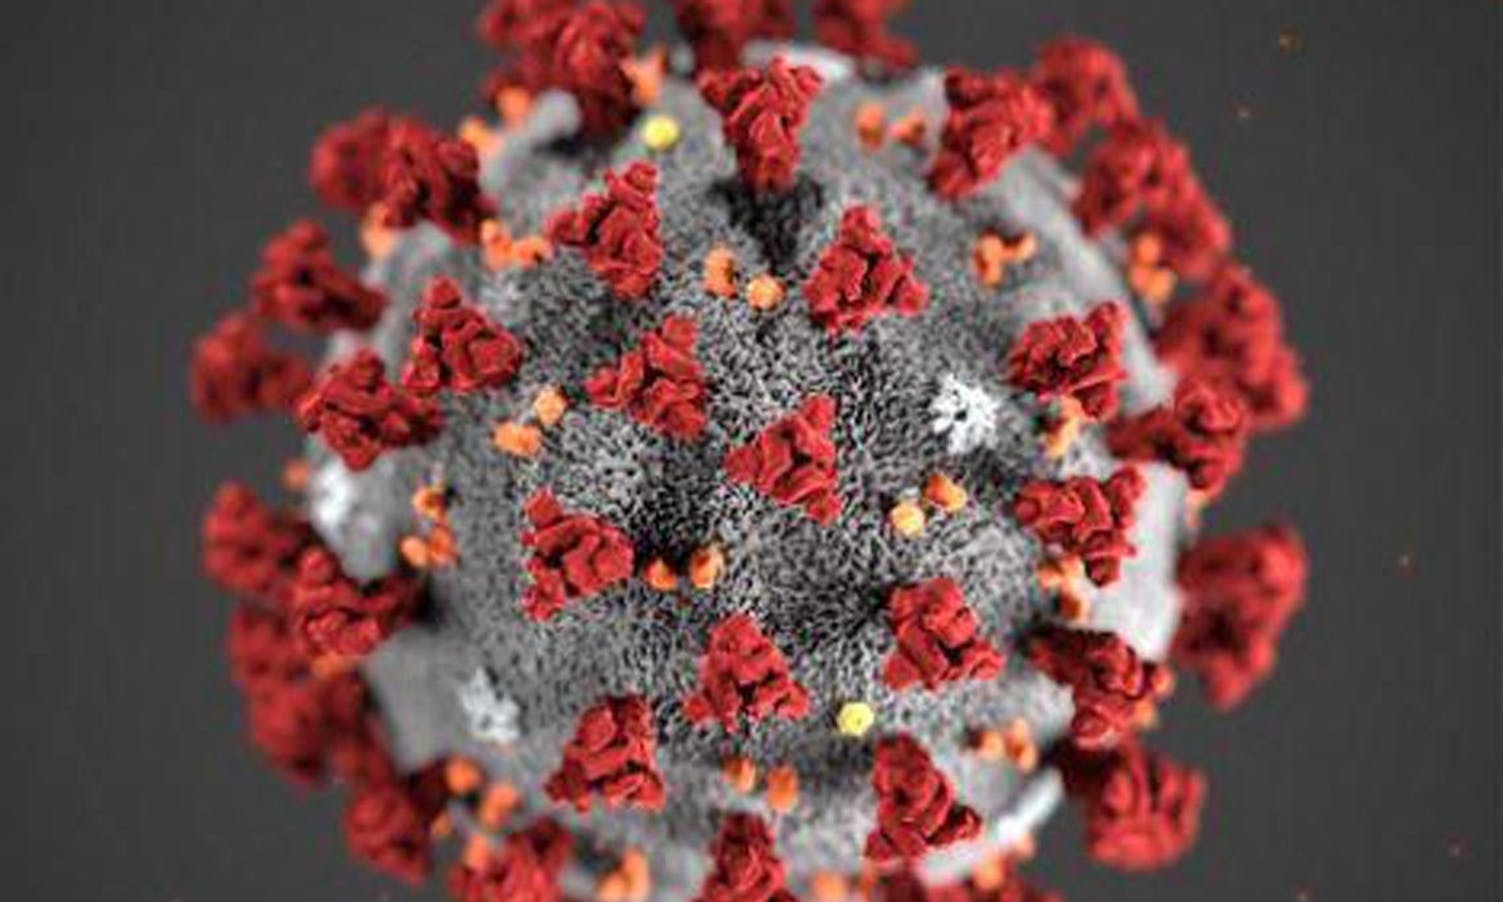 Kor smittsamt er koronaviruset? Kor tid kan vi bli kvitt det?